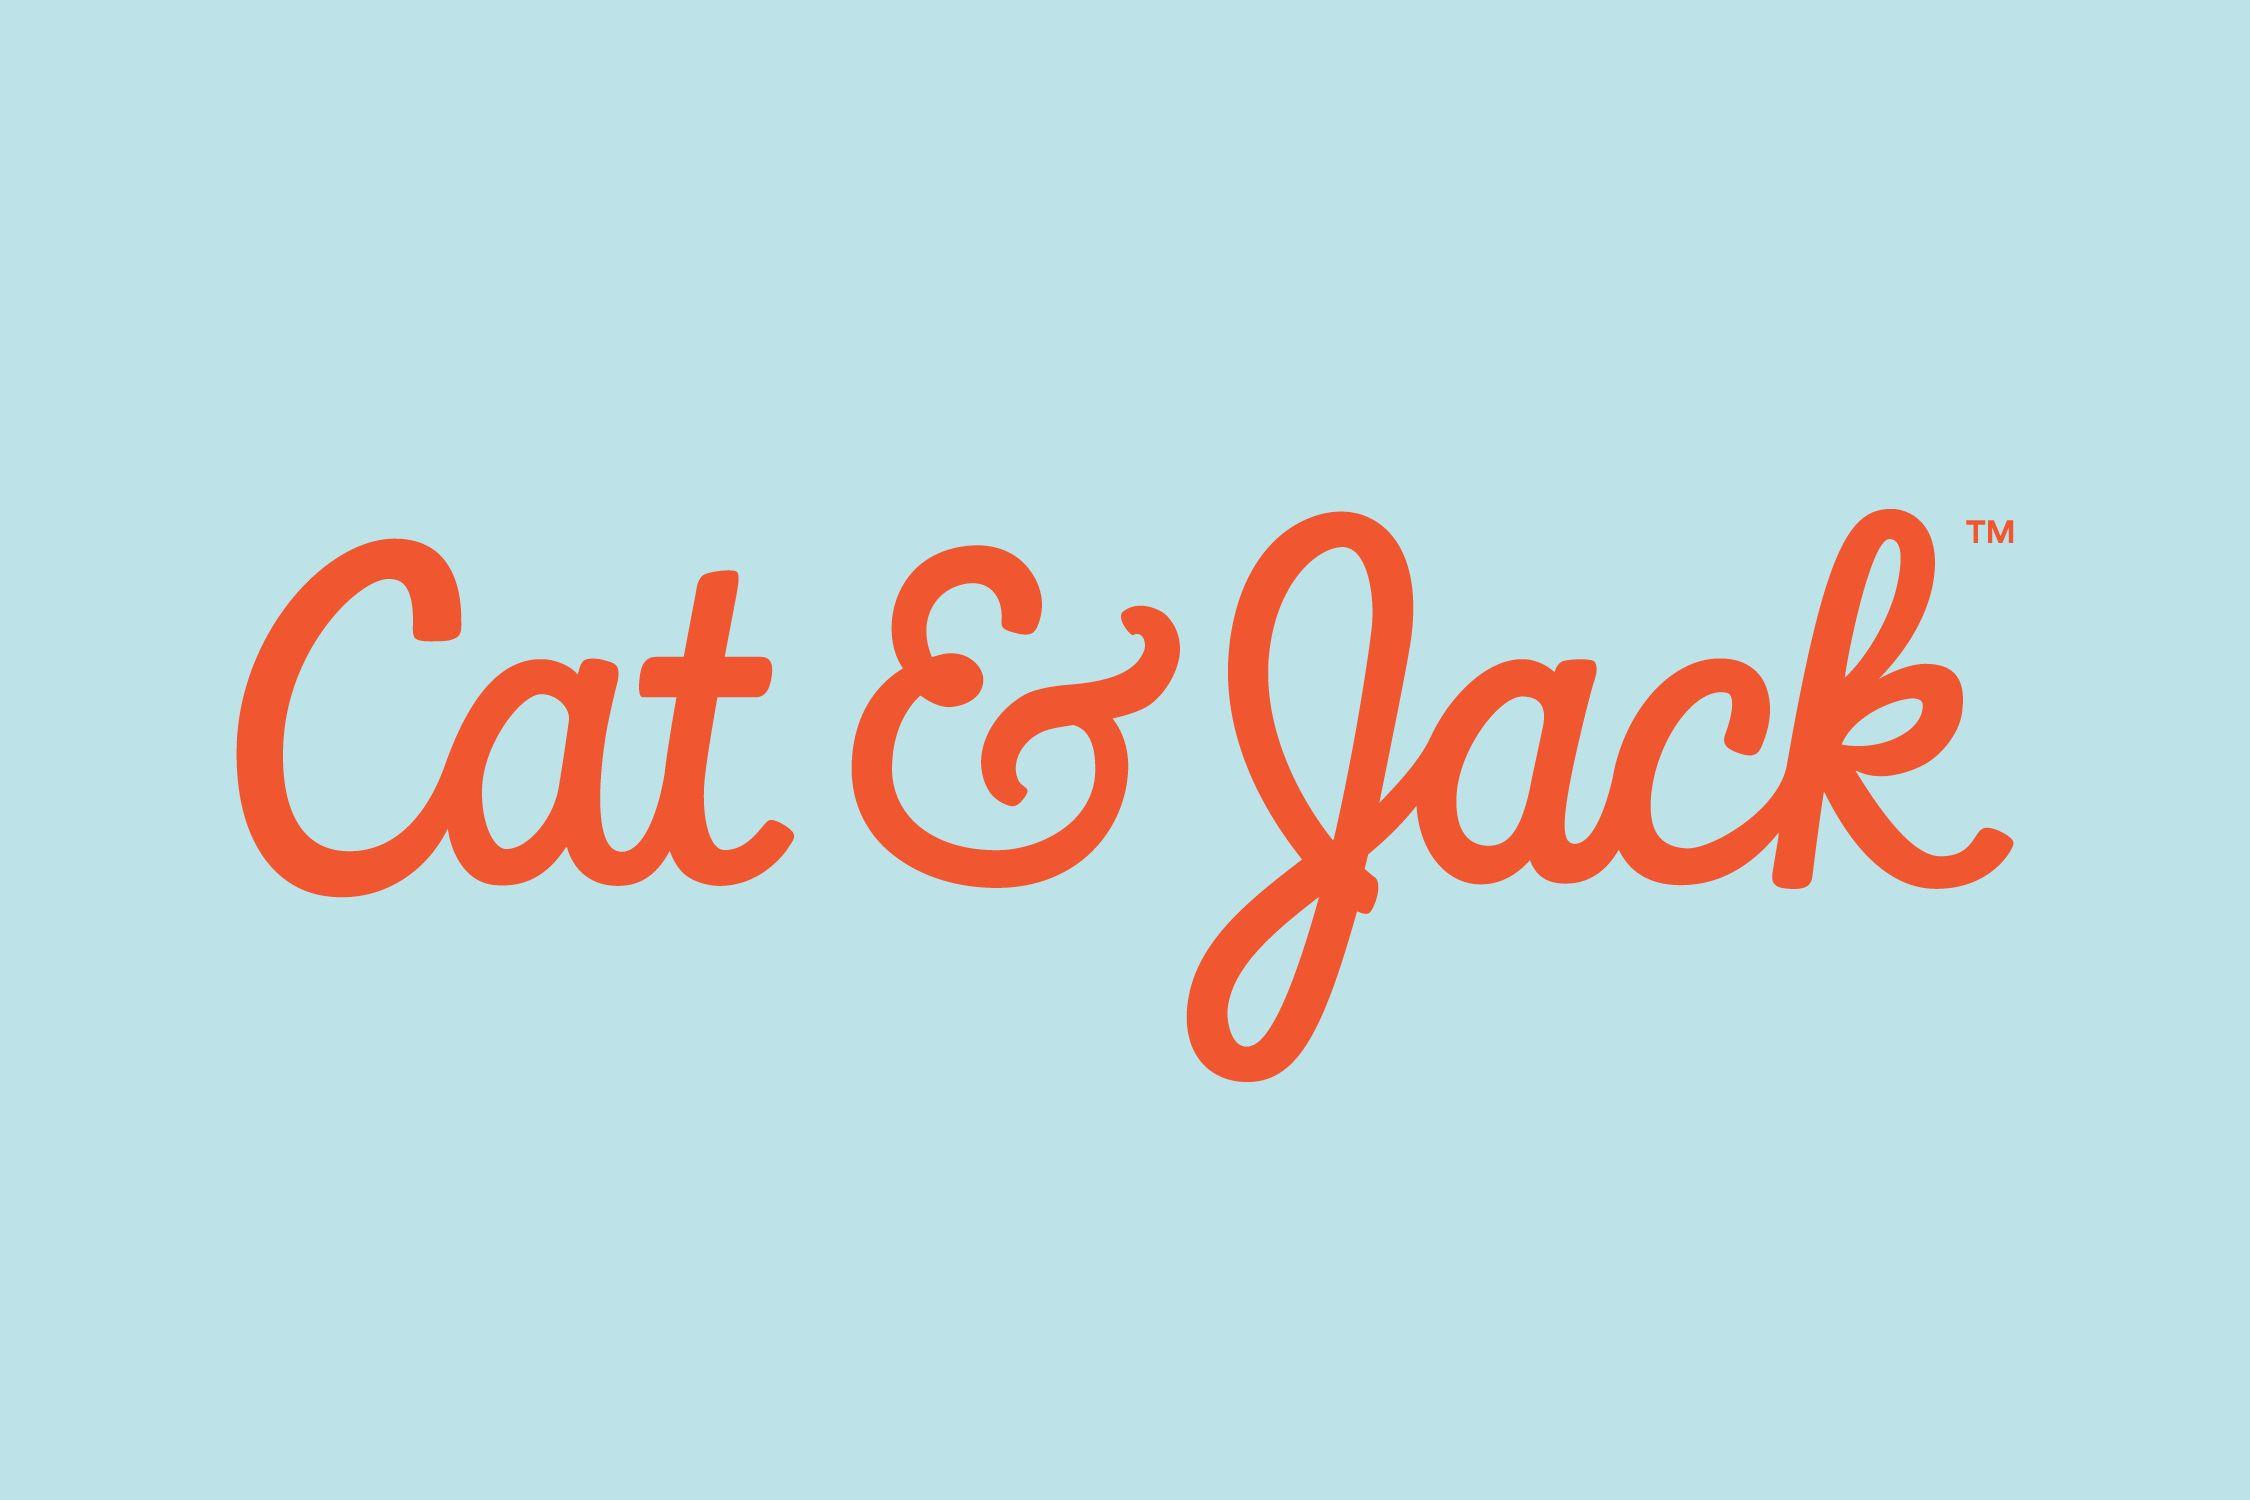 Orange Jack Logo - Cat & Jack - Tina Smith